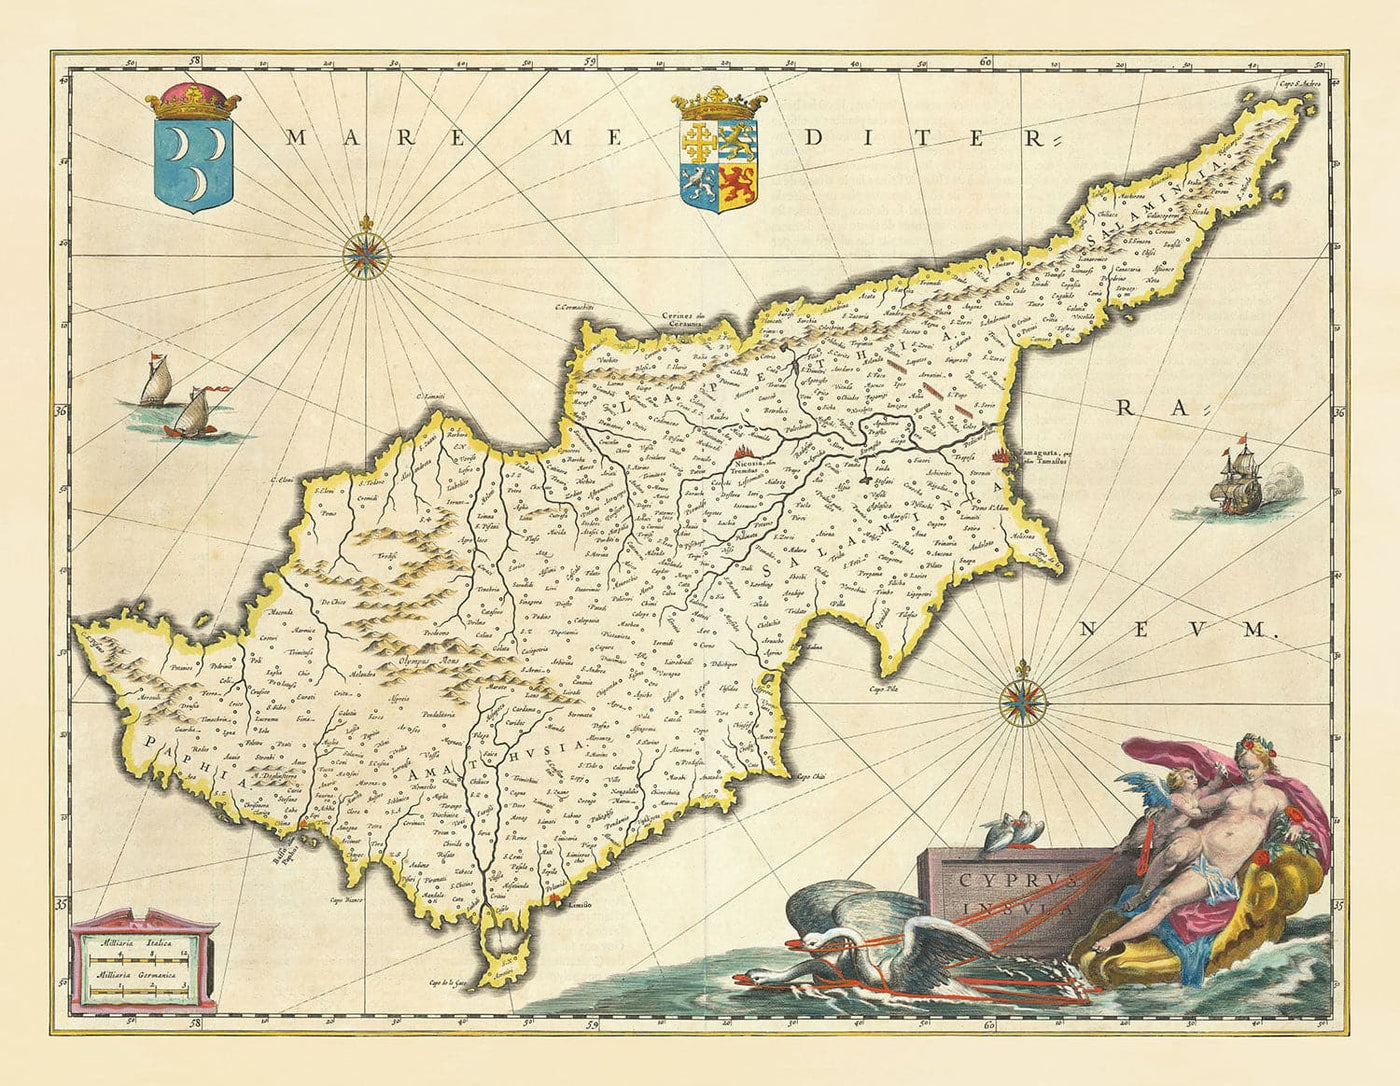 Alte Karte von Zypern von Willem Blaeu, 1640 - Nikosia, Kyrenia, Famagusta, Limassol, Pafos, Larnaca